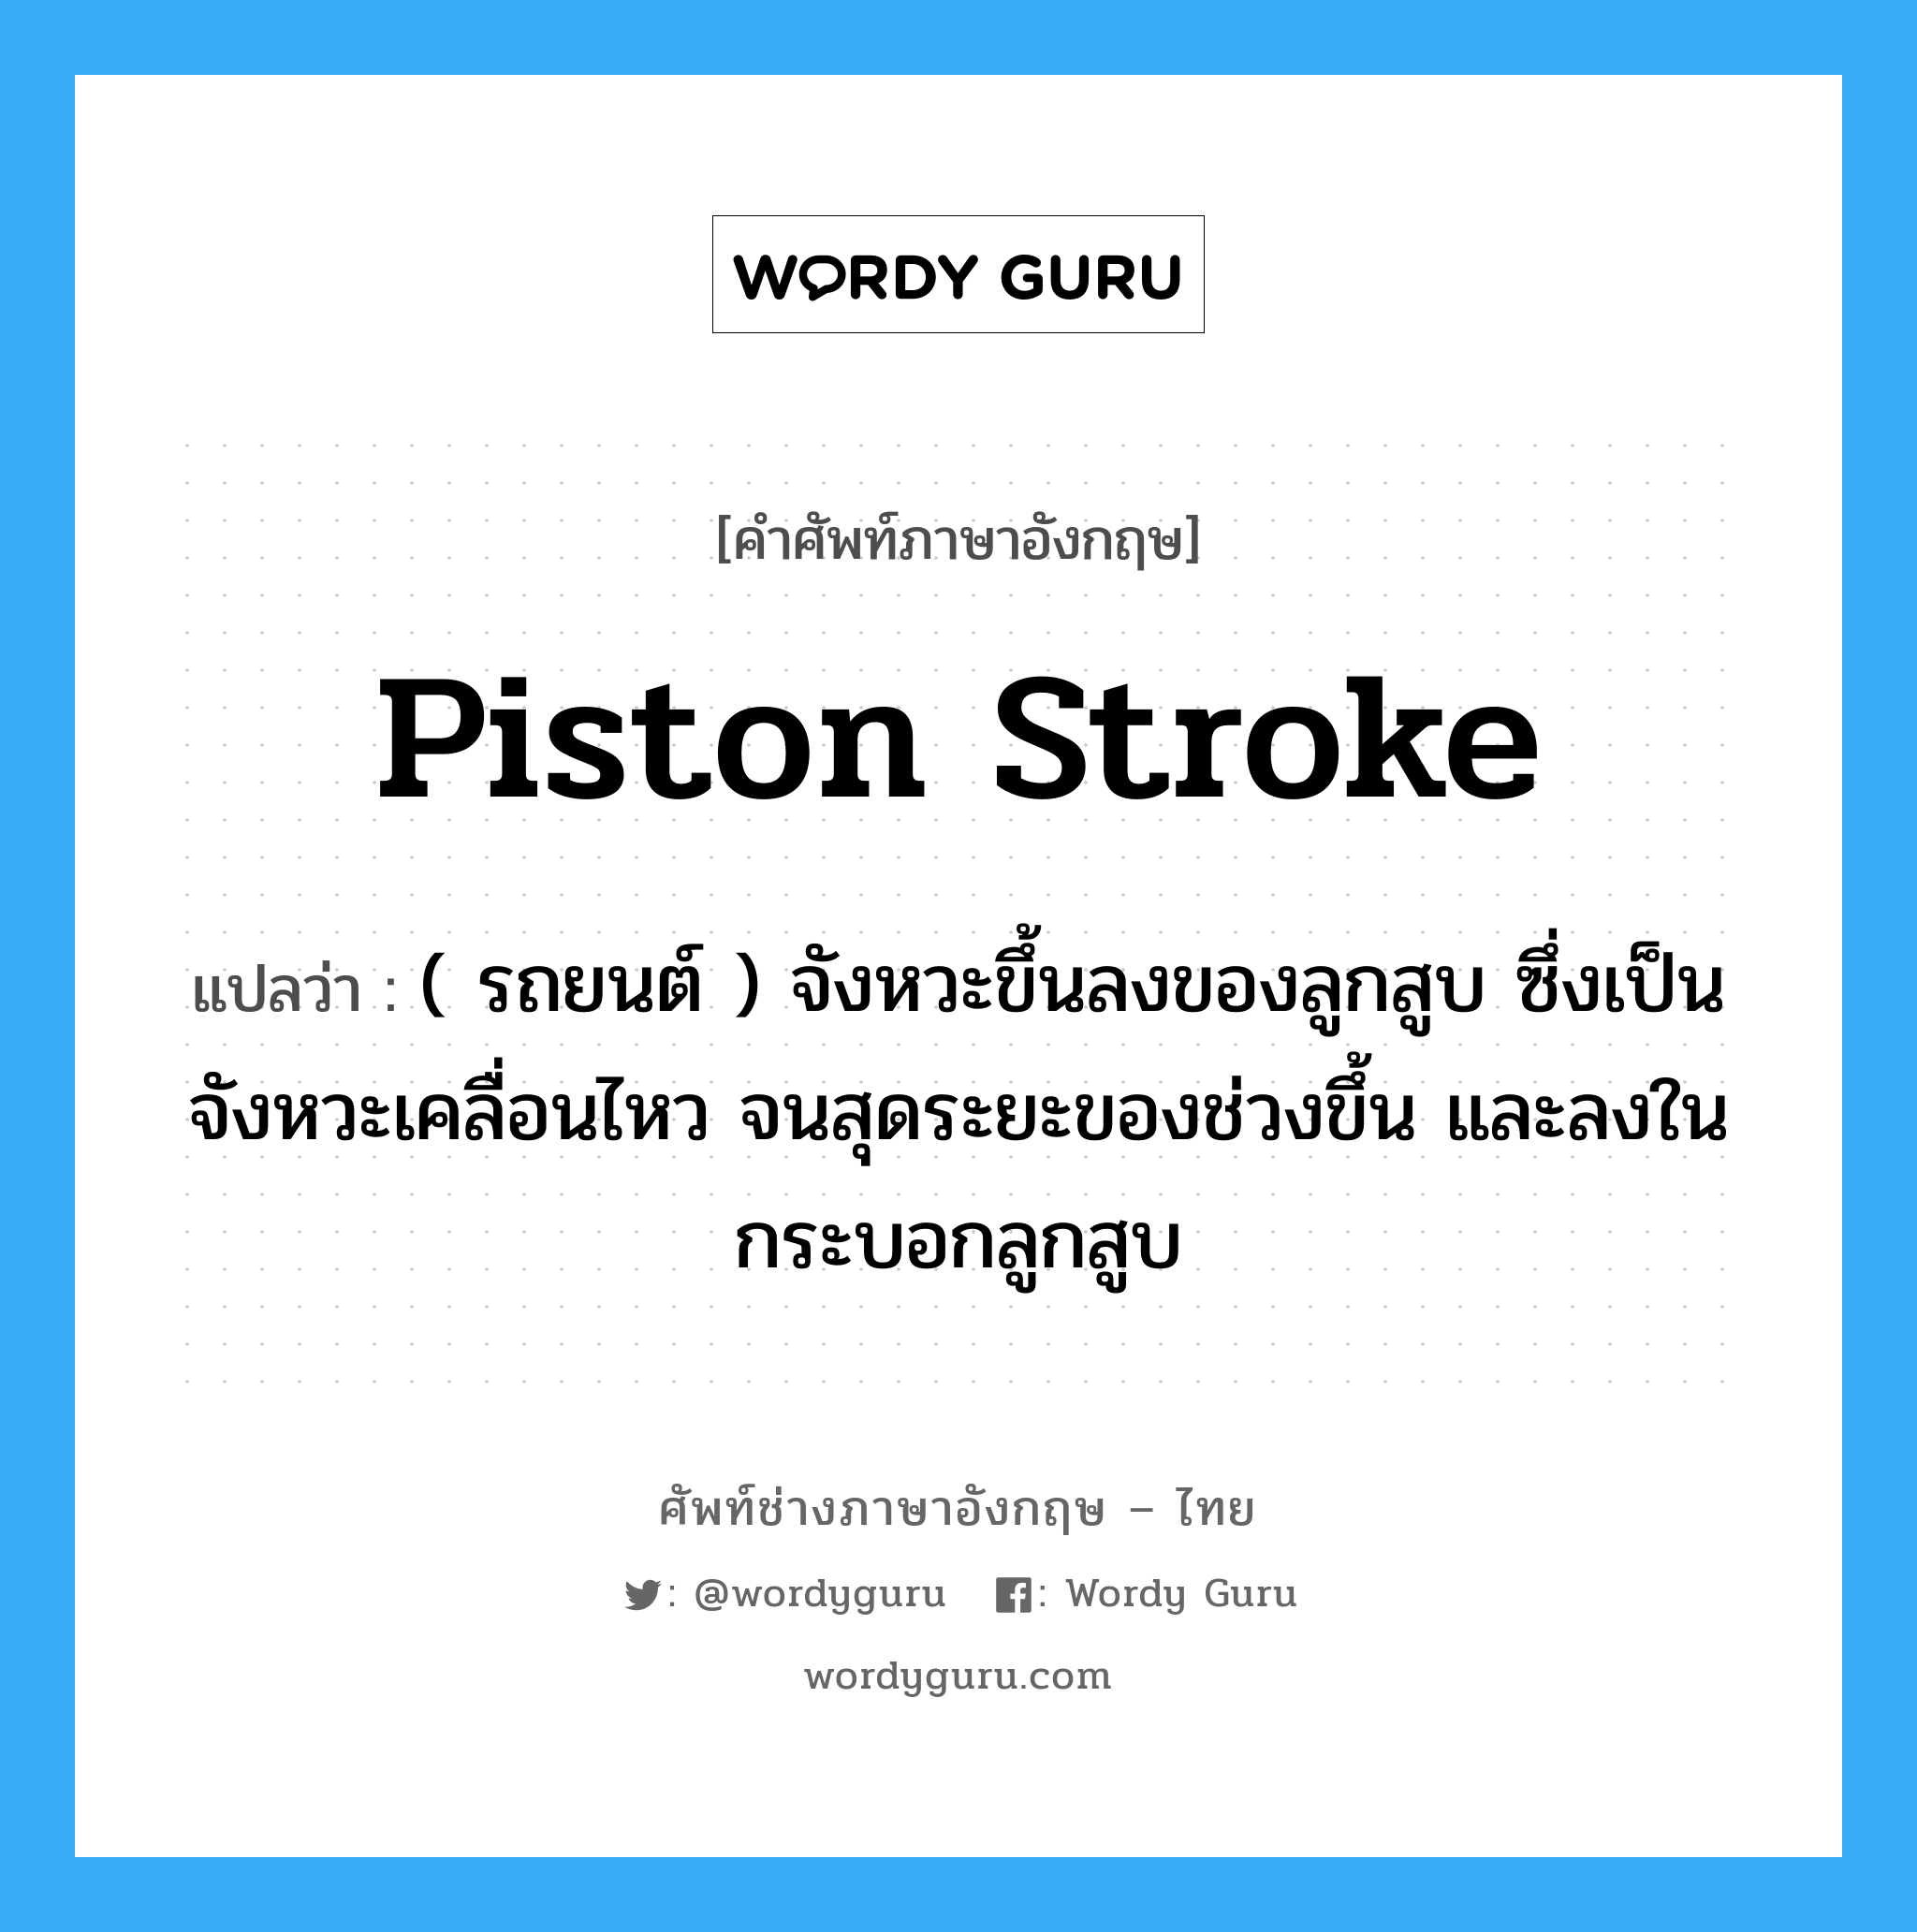 piston stroke แปลว่า?, คำศัพท์ช่างภาษาอังกฤษ - ไทย piston stroke คำศัพท์ภาษาอังกฤษ piston stroke แปลว่า ( รถยนต์ ) จังหวะขึ้นลงของลูกสูบ ซึ่งเป็นจังหวะเคลื่อนไหว จนสุดระยะของช่วงขึ้น และลงในกระบอกลูกสูบ